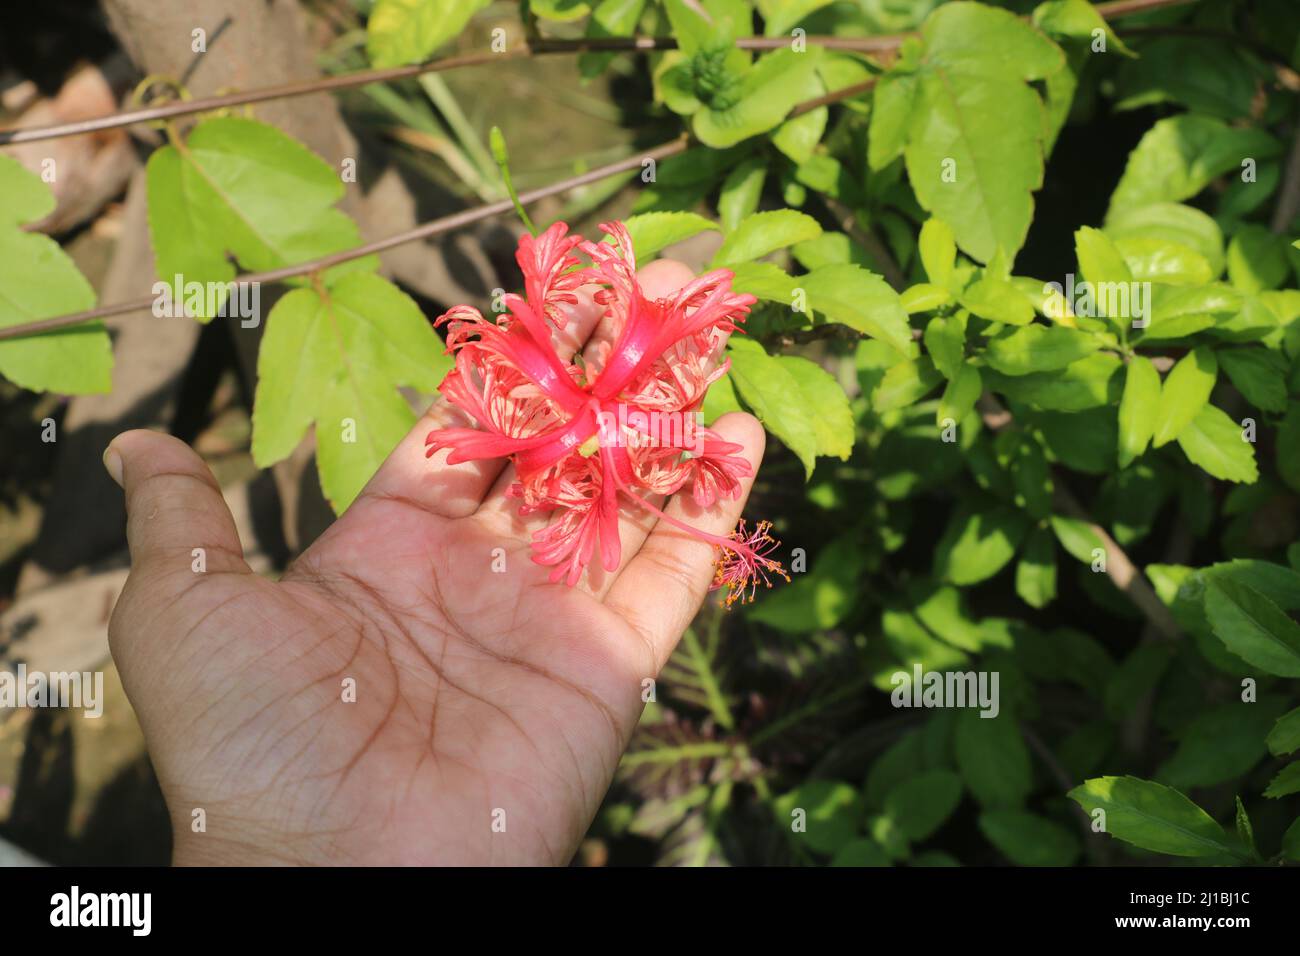 Jhumko joba o rosemallow frangiato, è un tipo di hibiscus ragno. Il nome scientifico di questo fiore è Hibiscus schizopetalus .questo è così bello. Foto Stock